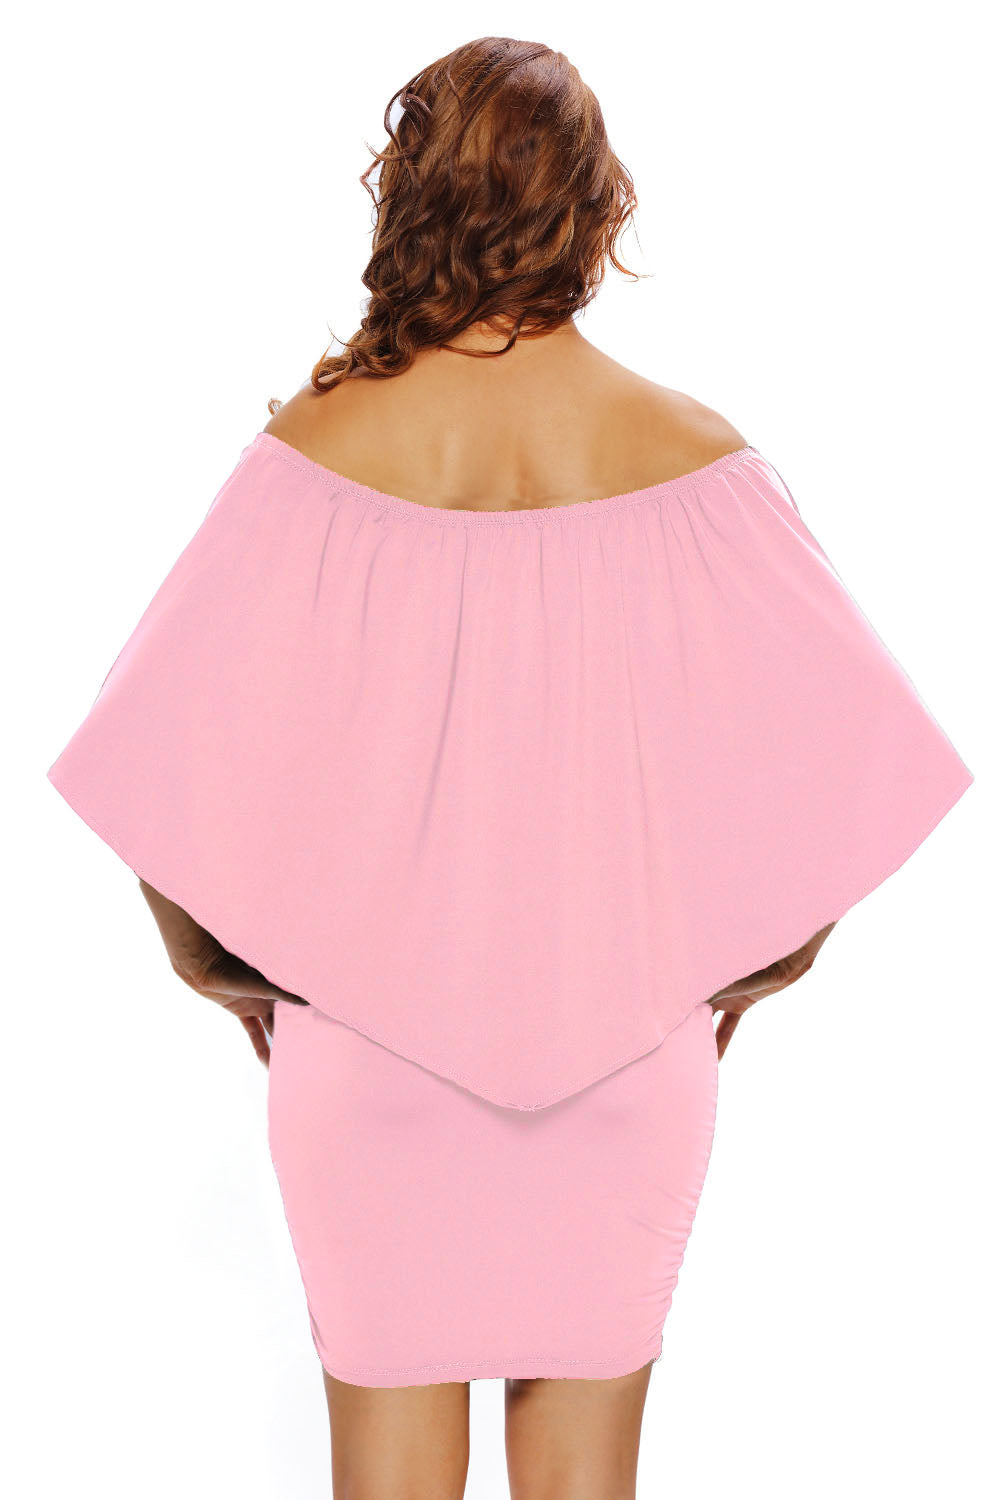 Robe mini poncho rose superposée à plusieurs pansements